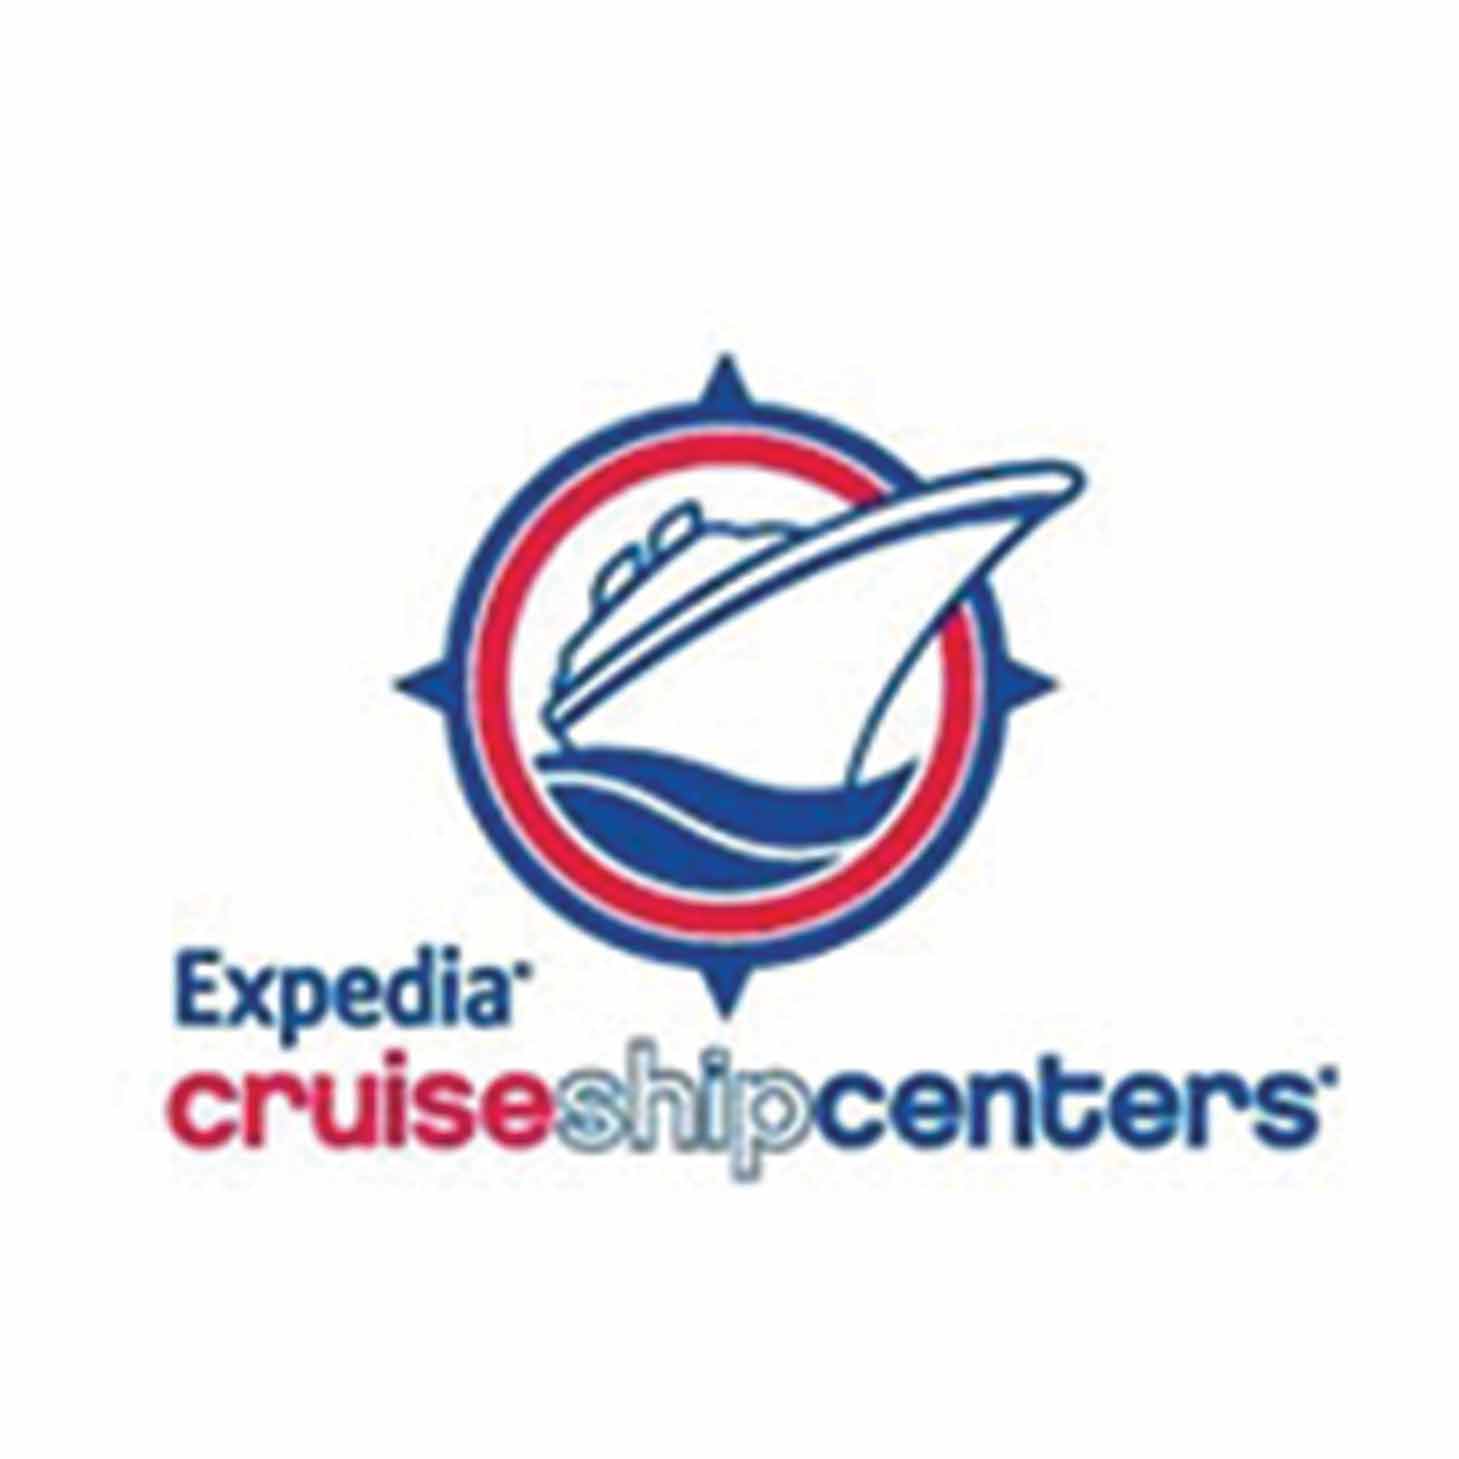 expedia cruise ship centre contact